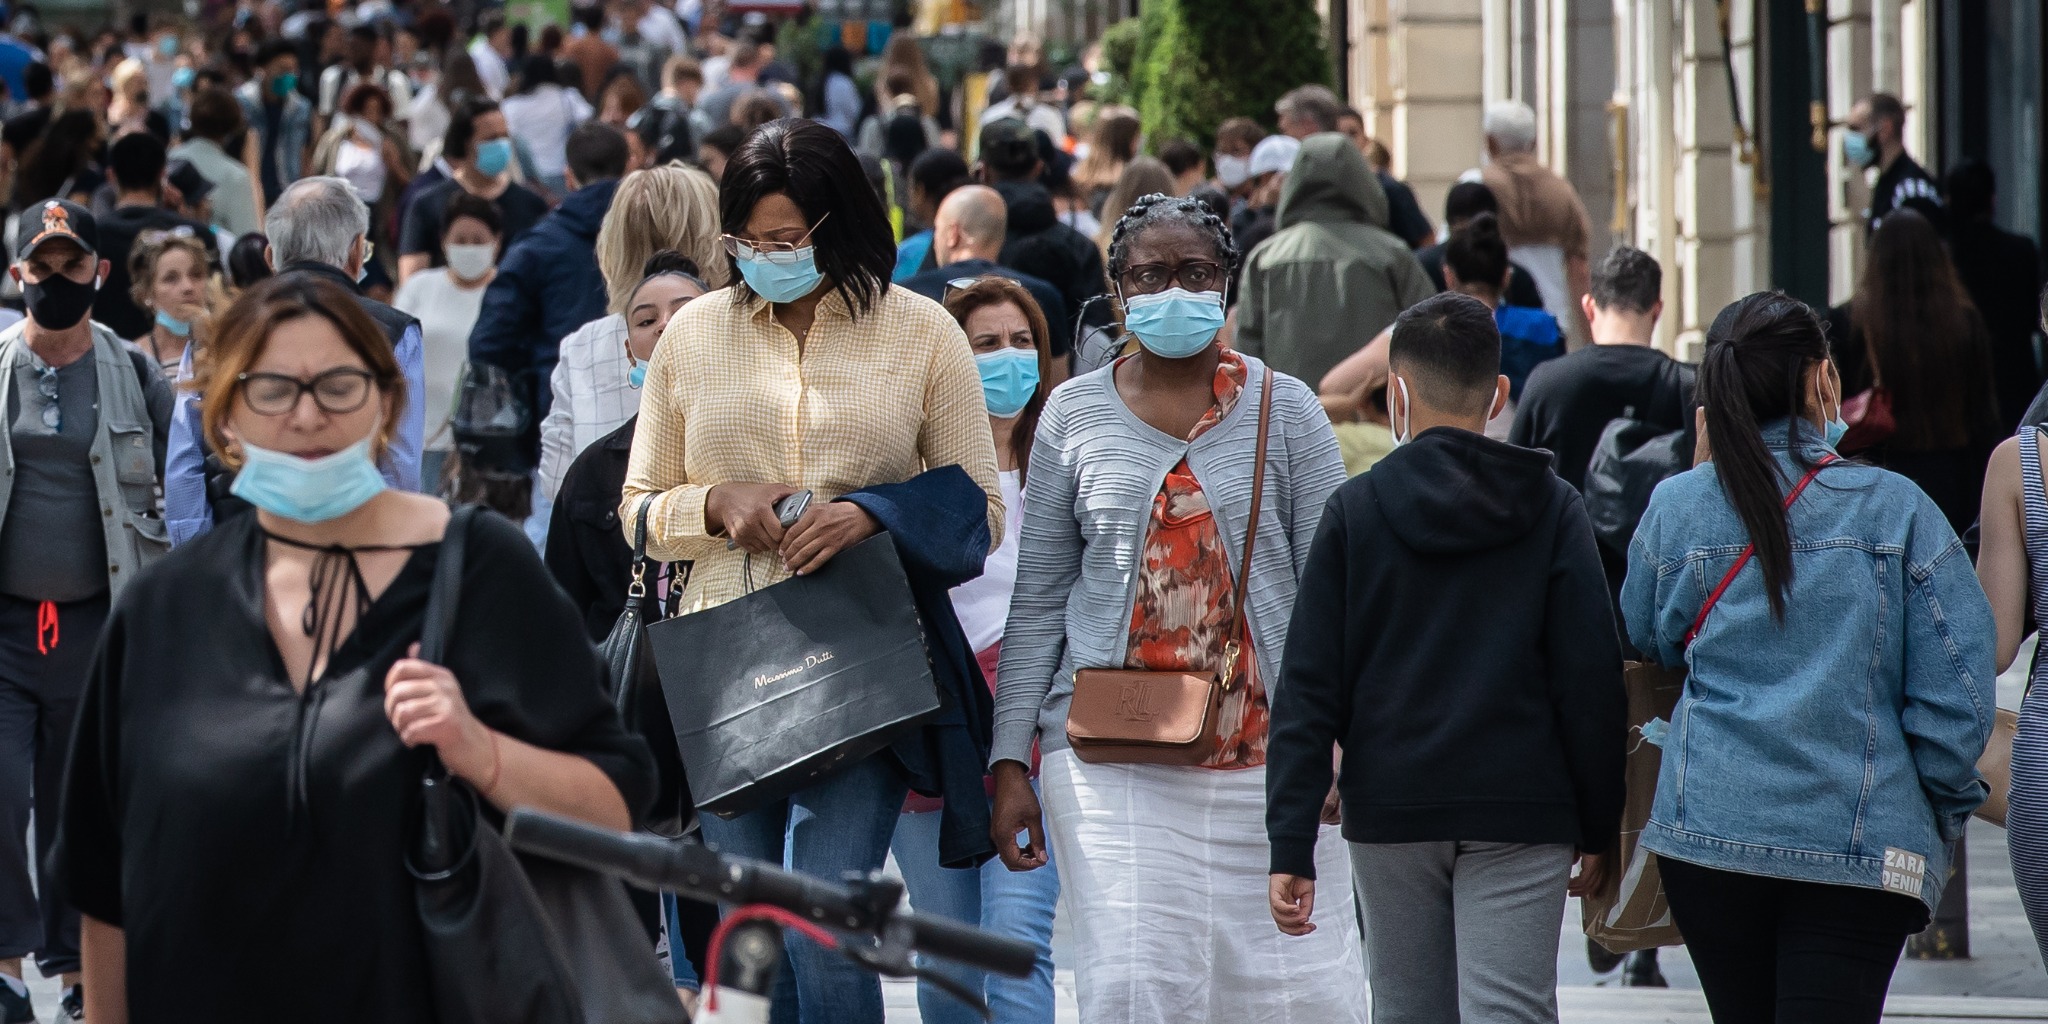 法國參議院出現群體性感染 多名議員確診感染新冠肺炎